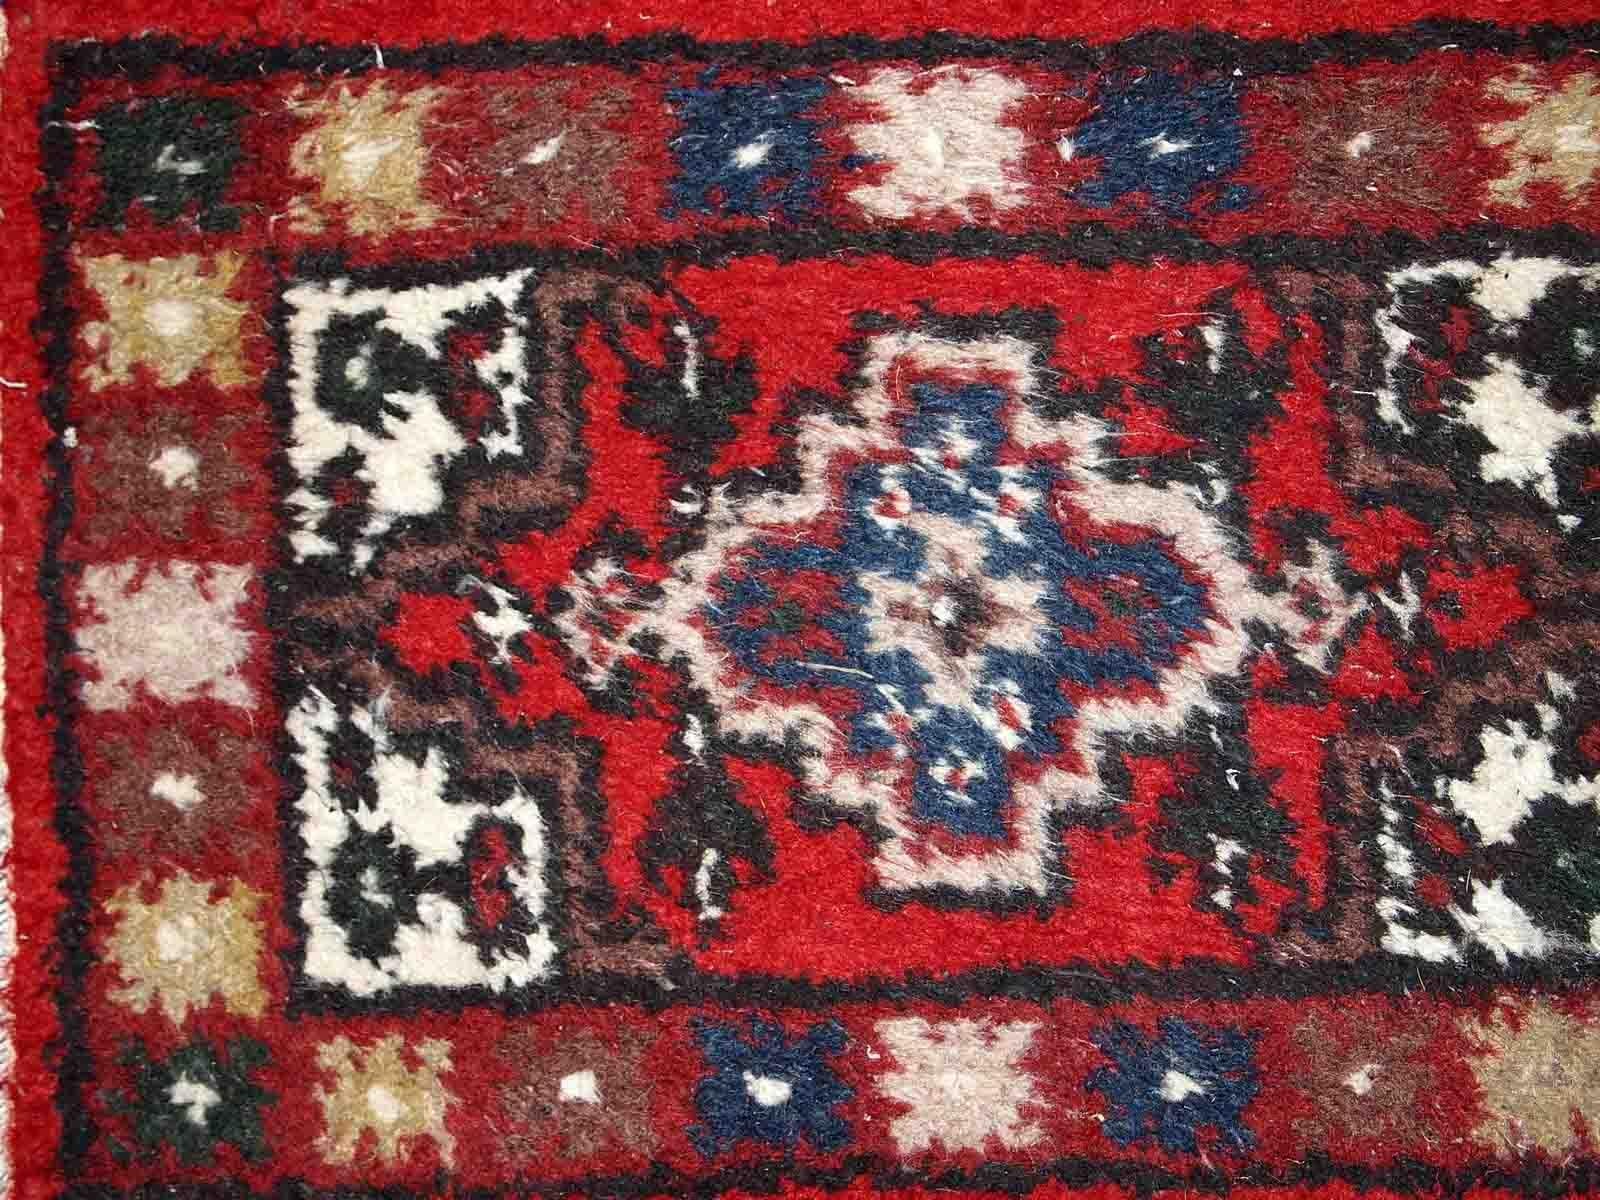 Handgefertigte Matte aus dem Nahen Osten in gutem Originalzustand. Der Teppich stammt aus dem Ende des 20. Jahrhunderts.

-zustand: original gut, 

-etwa: 1970er Jahre,

-größe: 1,3' x 1,9' (40cm x 59cm),

-material: